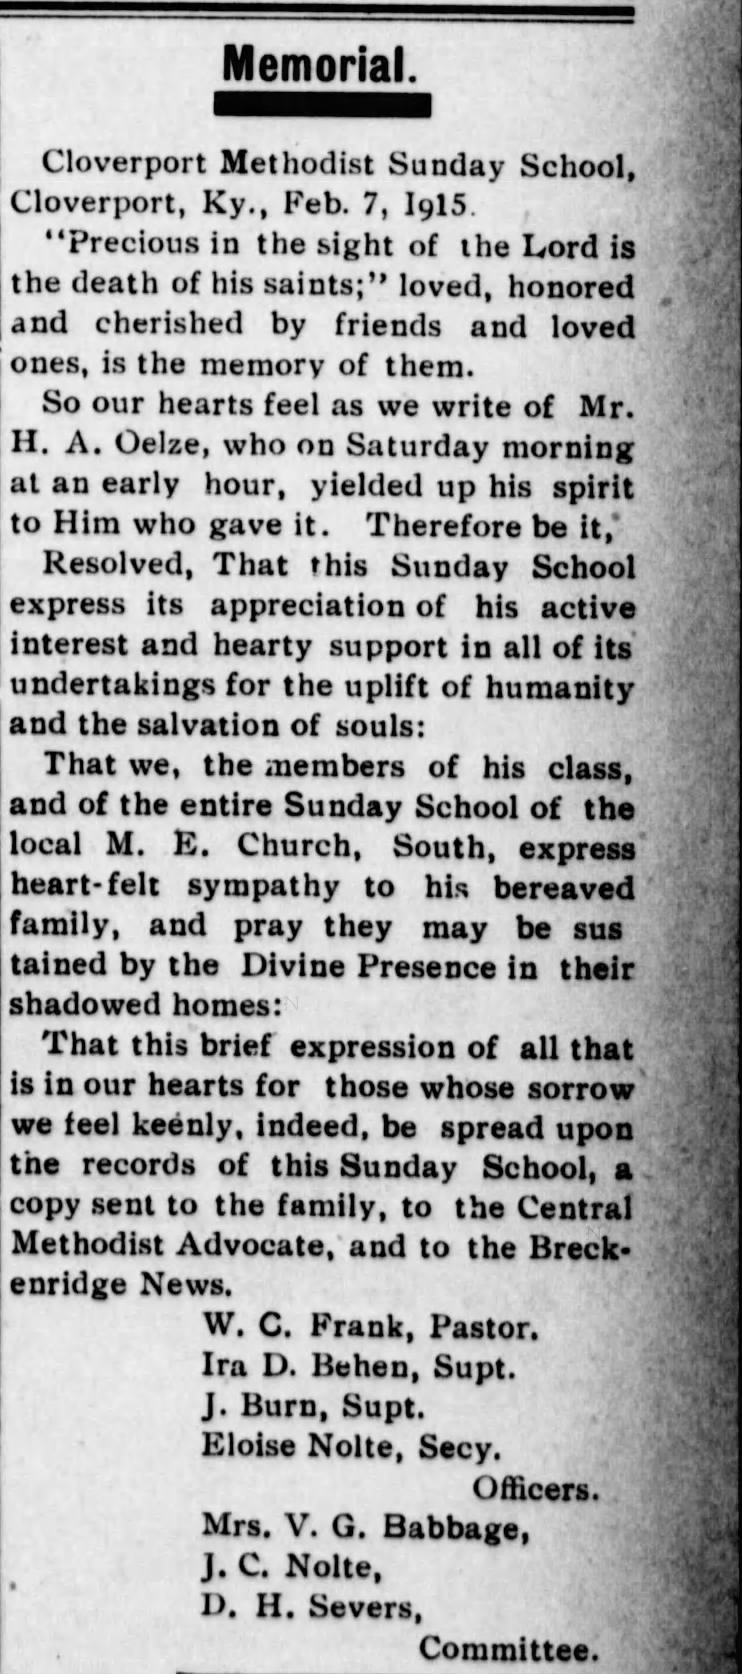 The Breckenridge News 10 Feb 1915